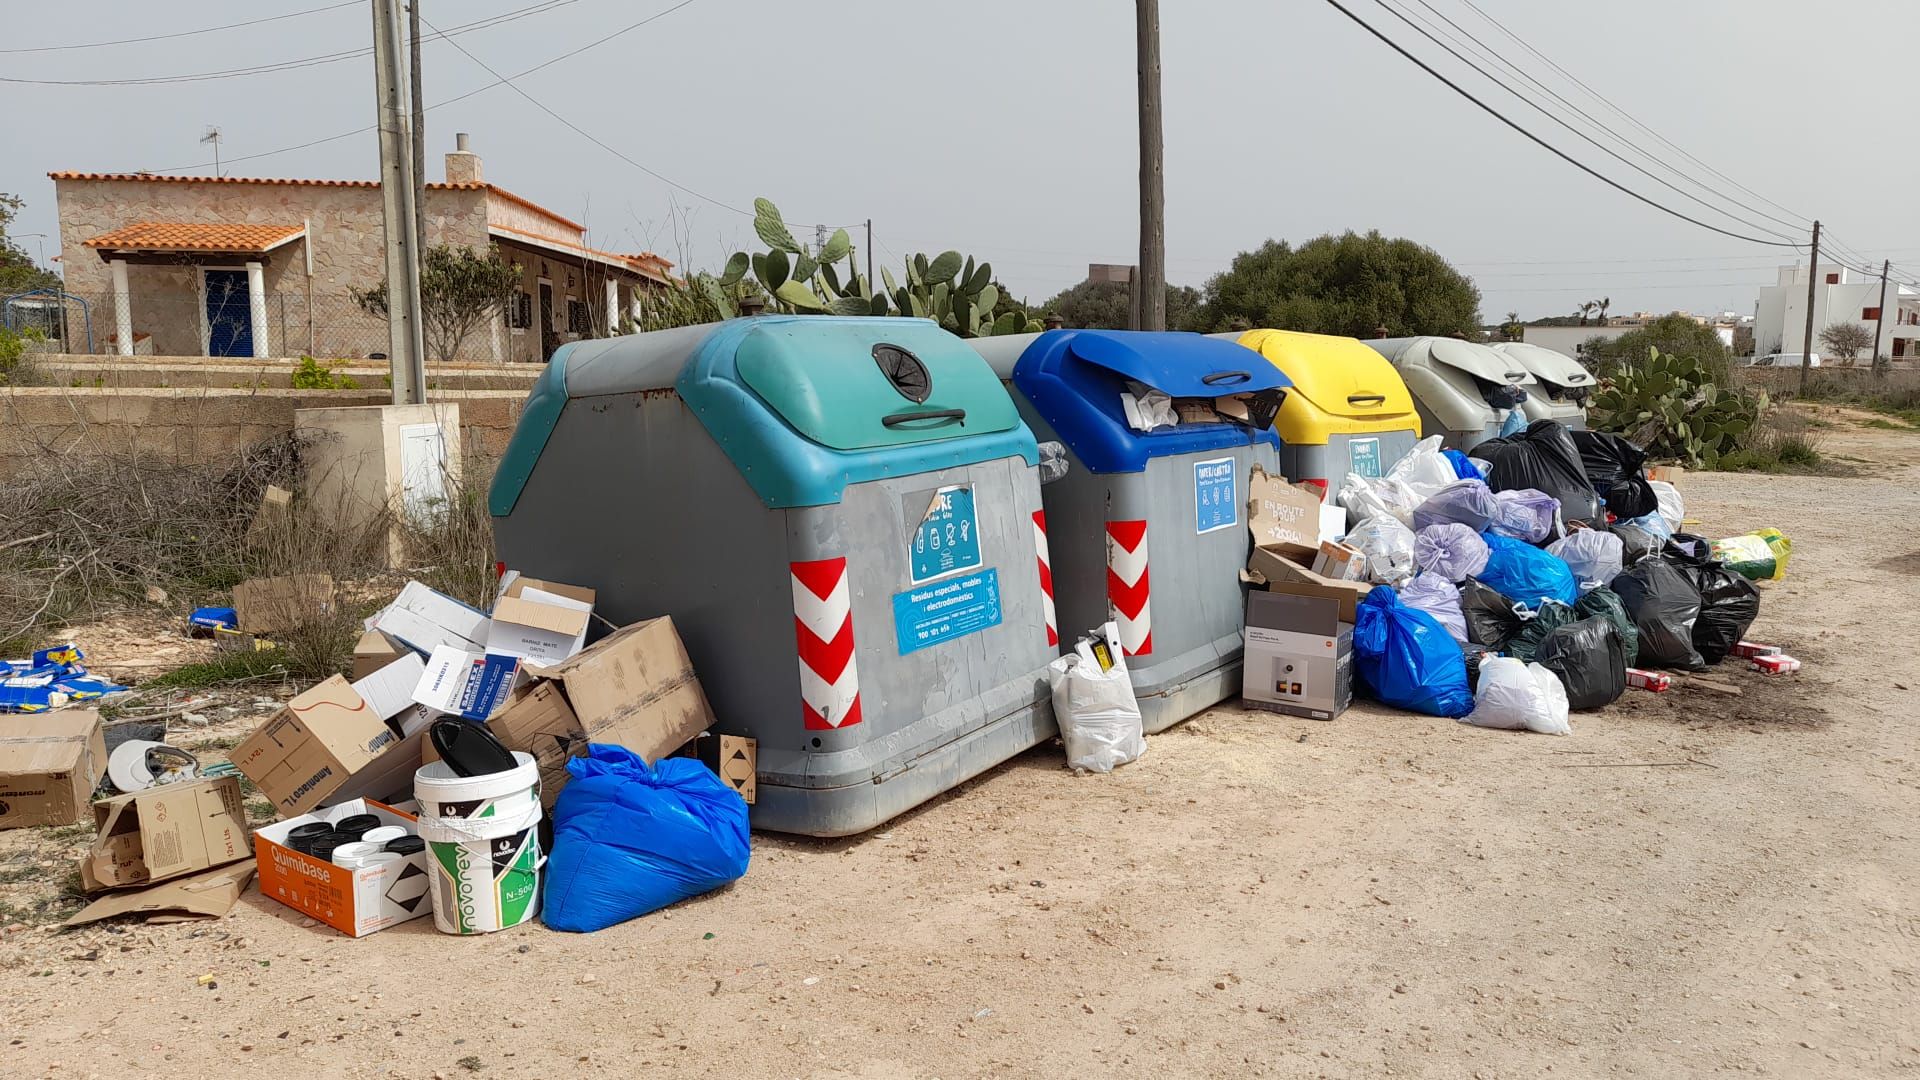 Galería de imágenes: Huelga de basureros en Formentera